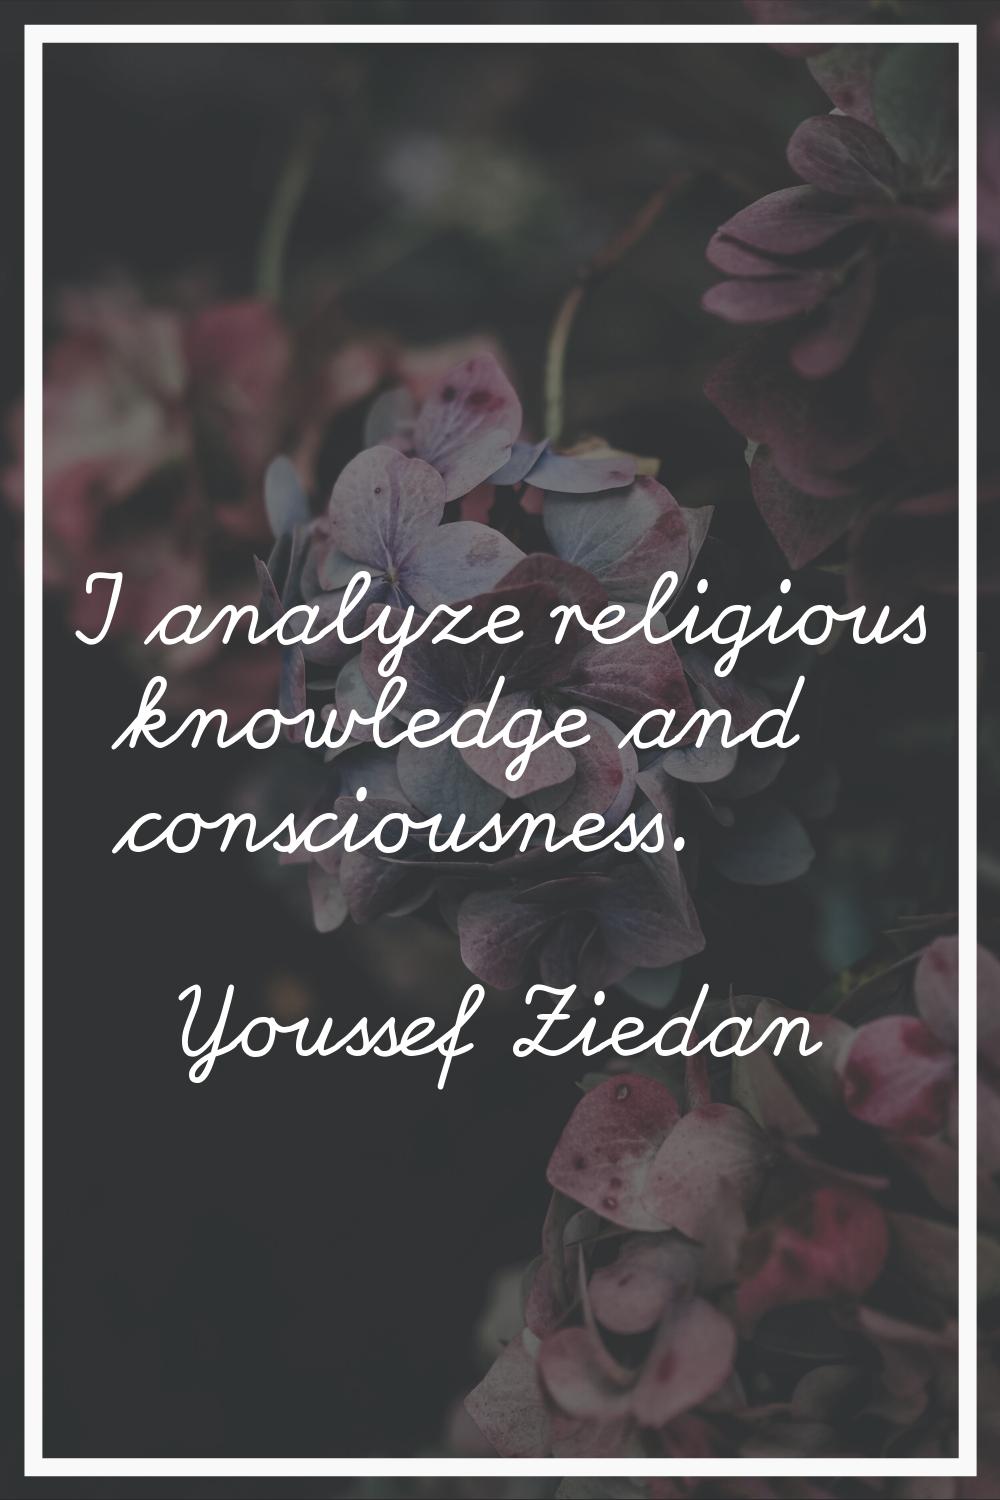 I analyze religious knowledge and consciousness.